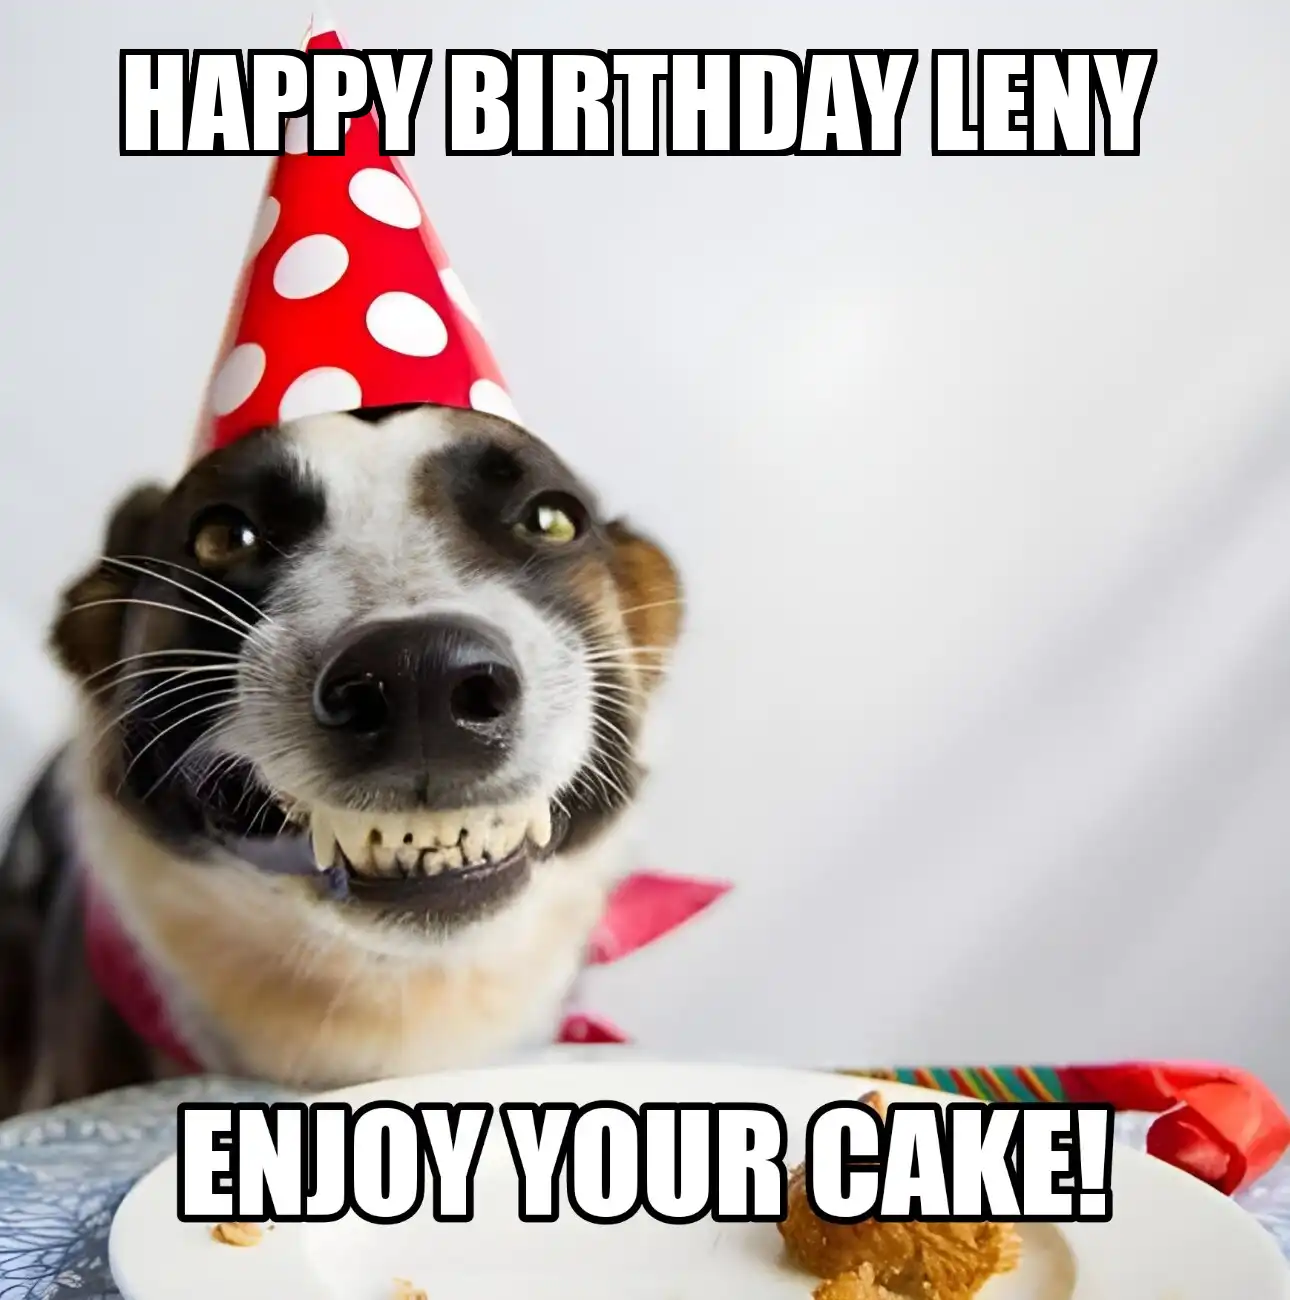 Happy Birthday Leny Enjoy Your Cake Dog Meme